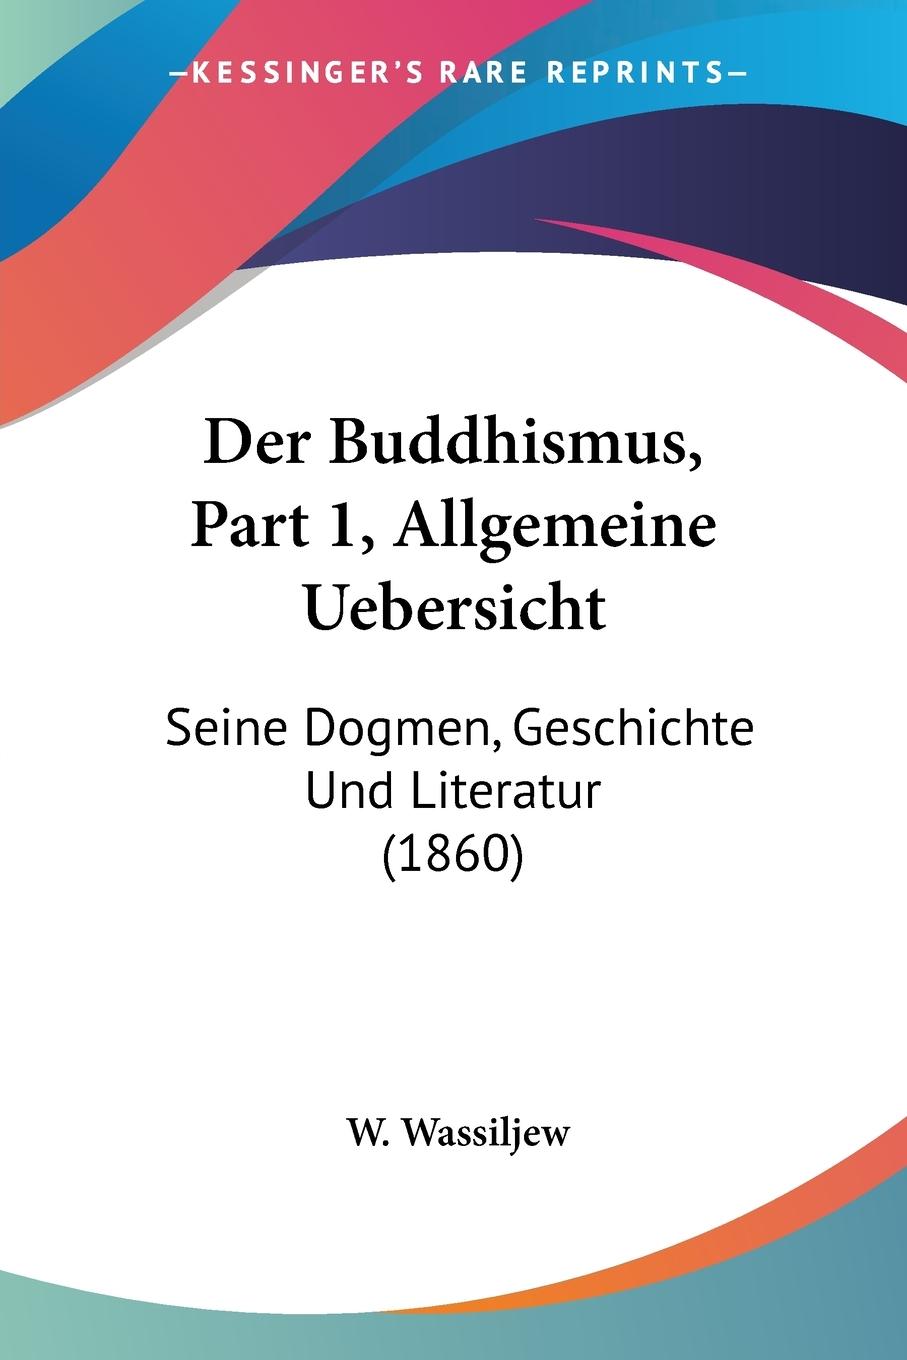 Der Buddhismus, Part 1, Allgemeine Uebersicht - Wassiljew, W.